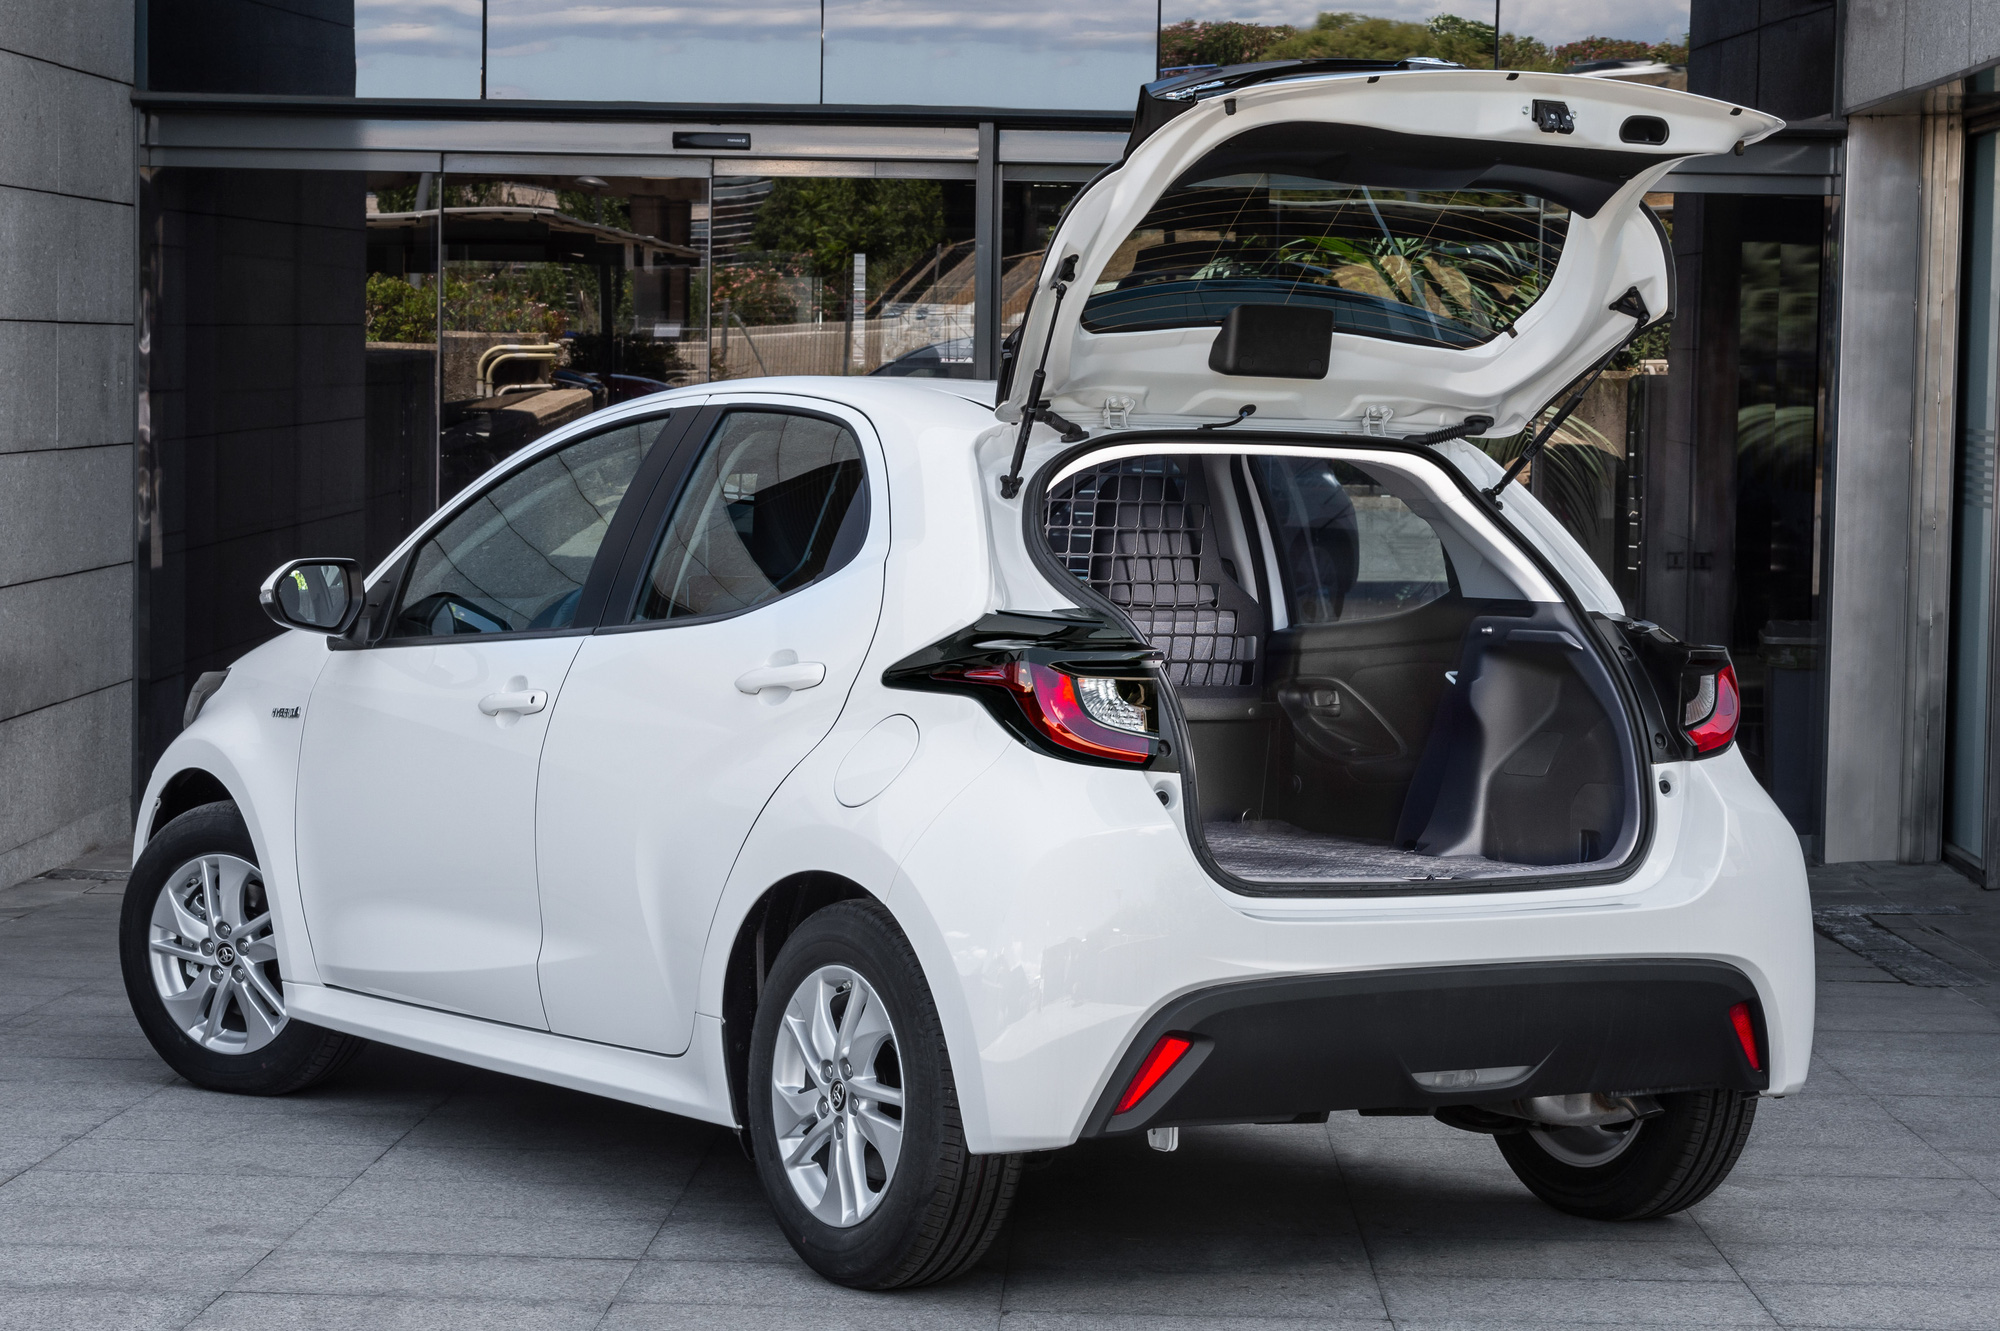 Ra mắt Toyota Yaris ECOVan - Xe dịch vụ giá quy đổi từ 640 triệu, bỏ ghế sau, rộng gần gấp 3 bản thường - Ảnh 2.